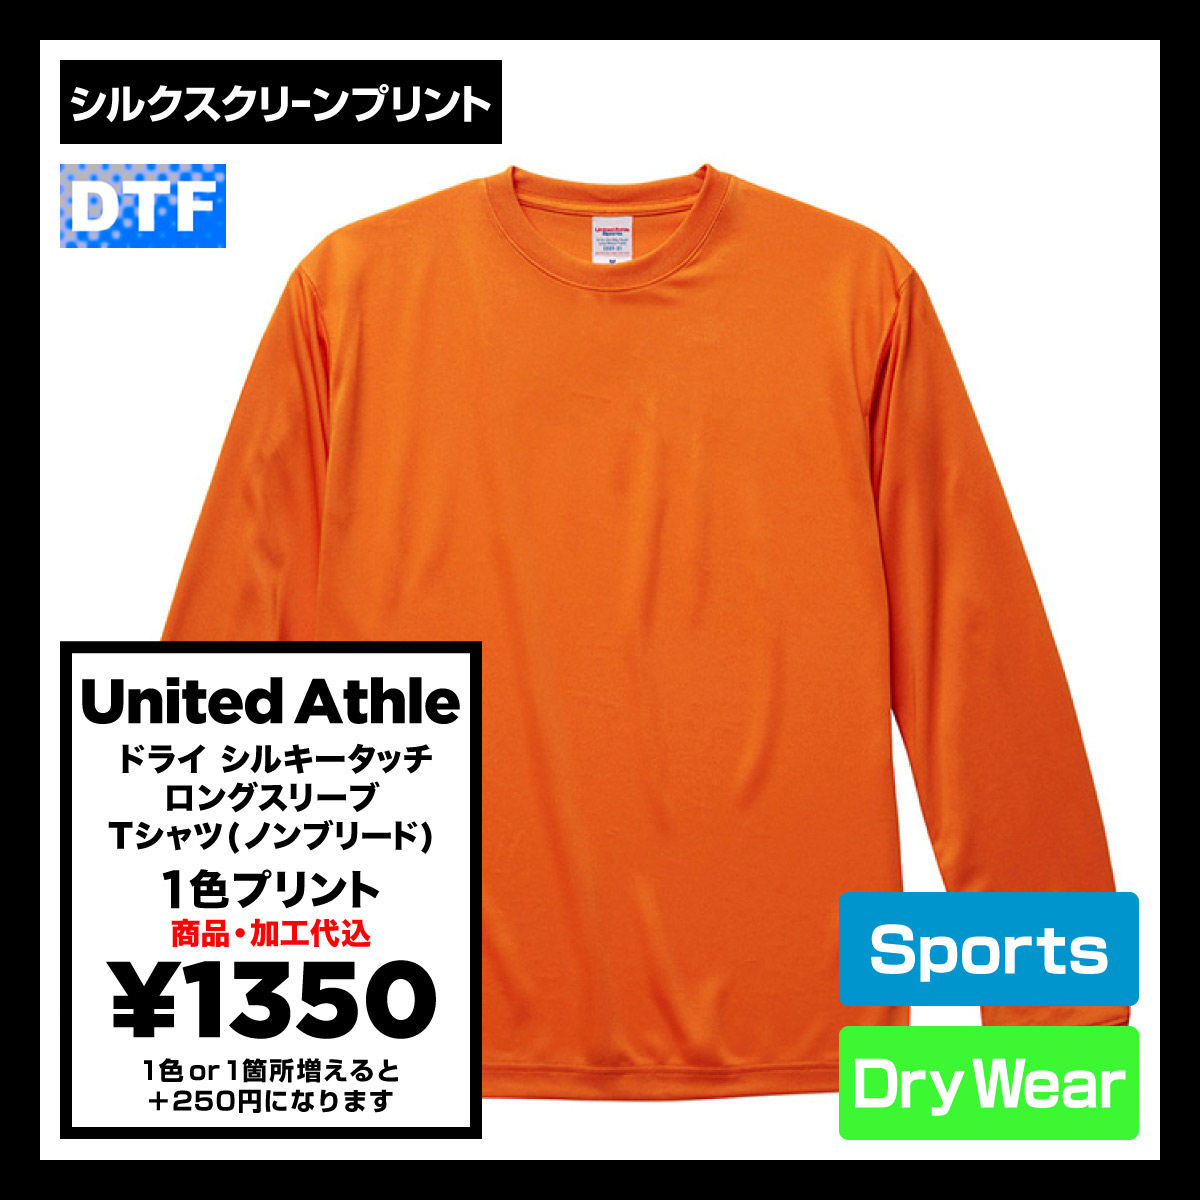 United Athle ユナイテッドアスレ 4.7 oz ドライ シルキータッチ ロングスリーブ Tシャツ (ノンブリード) (品番5089-01)